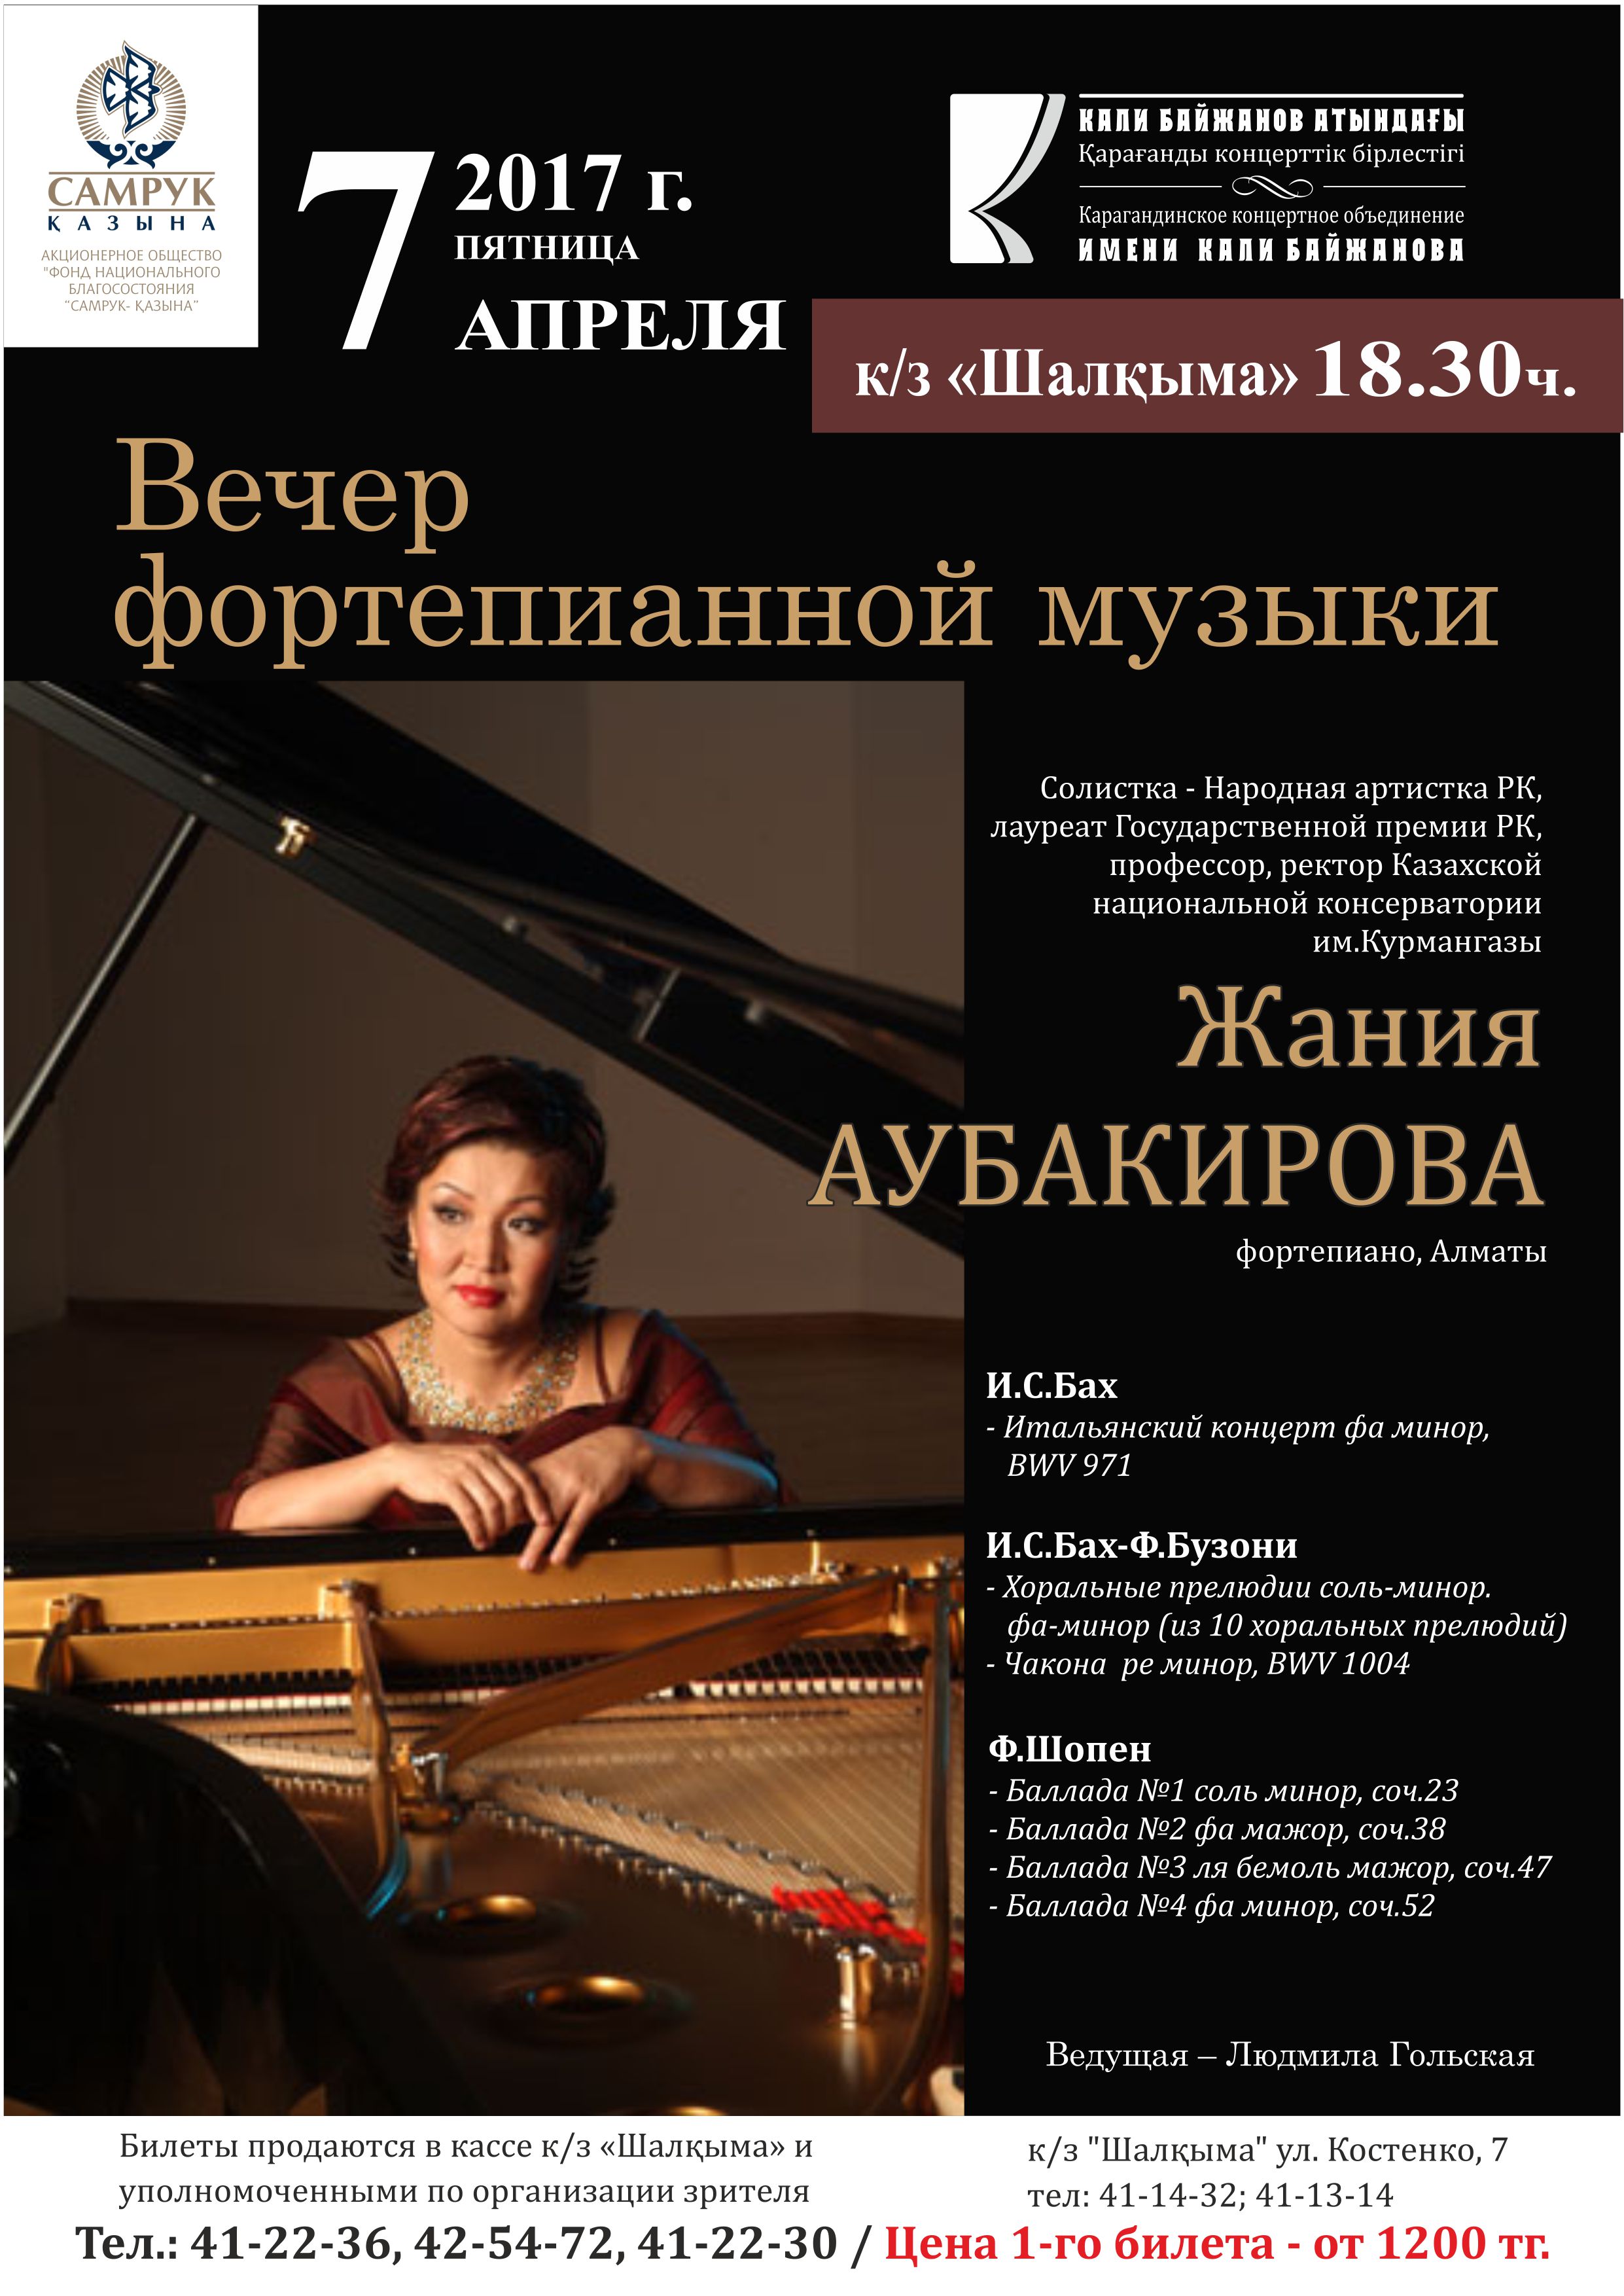 2017_04_07-vecher-fortepiannoj-muzyki-aubakirova-zhaniya